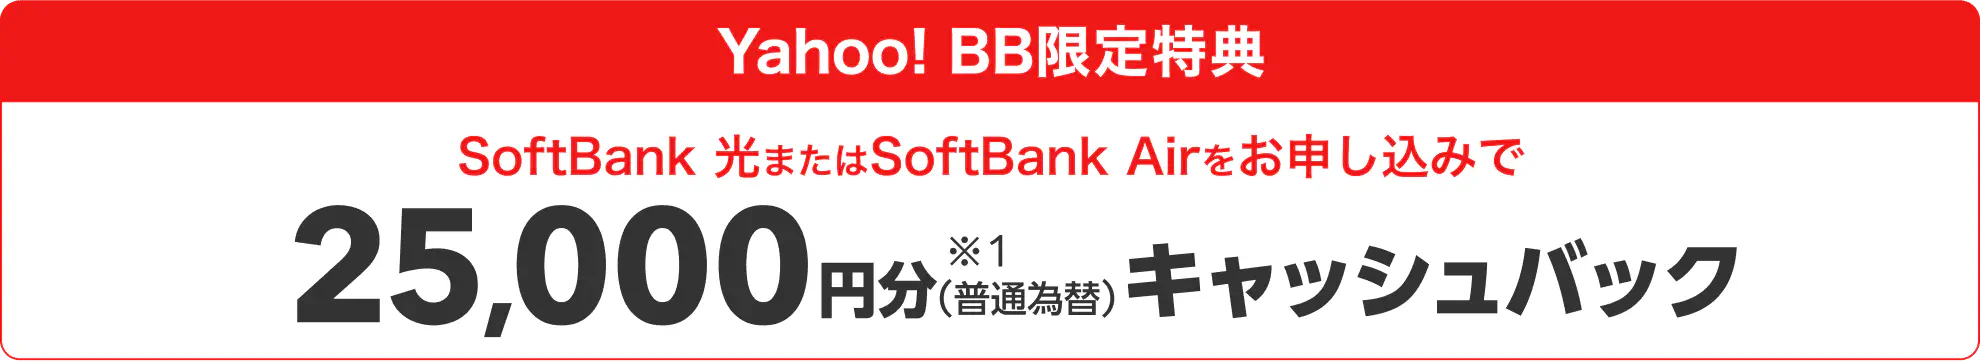 Yahoo! BB限定特典 SoftBank 光またはSoftBank Airをお申し込みで25,000円分 ※1（普通為替）キャッシュバック